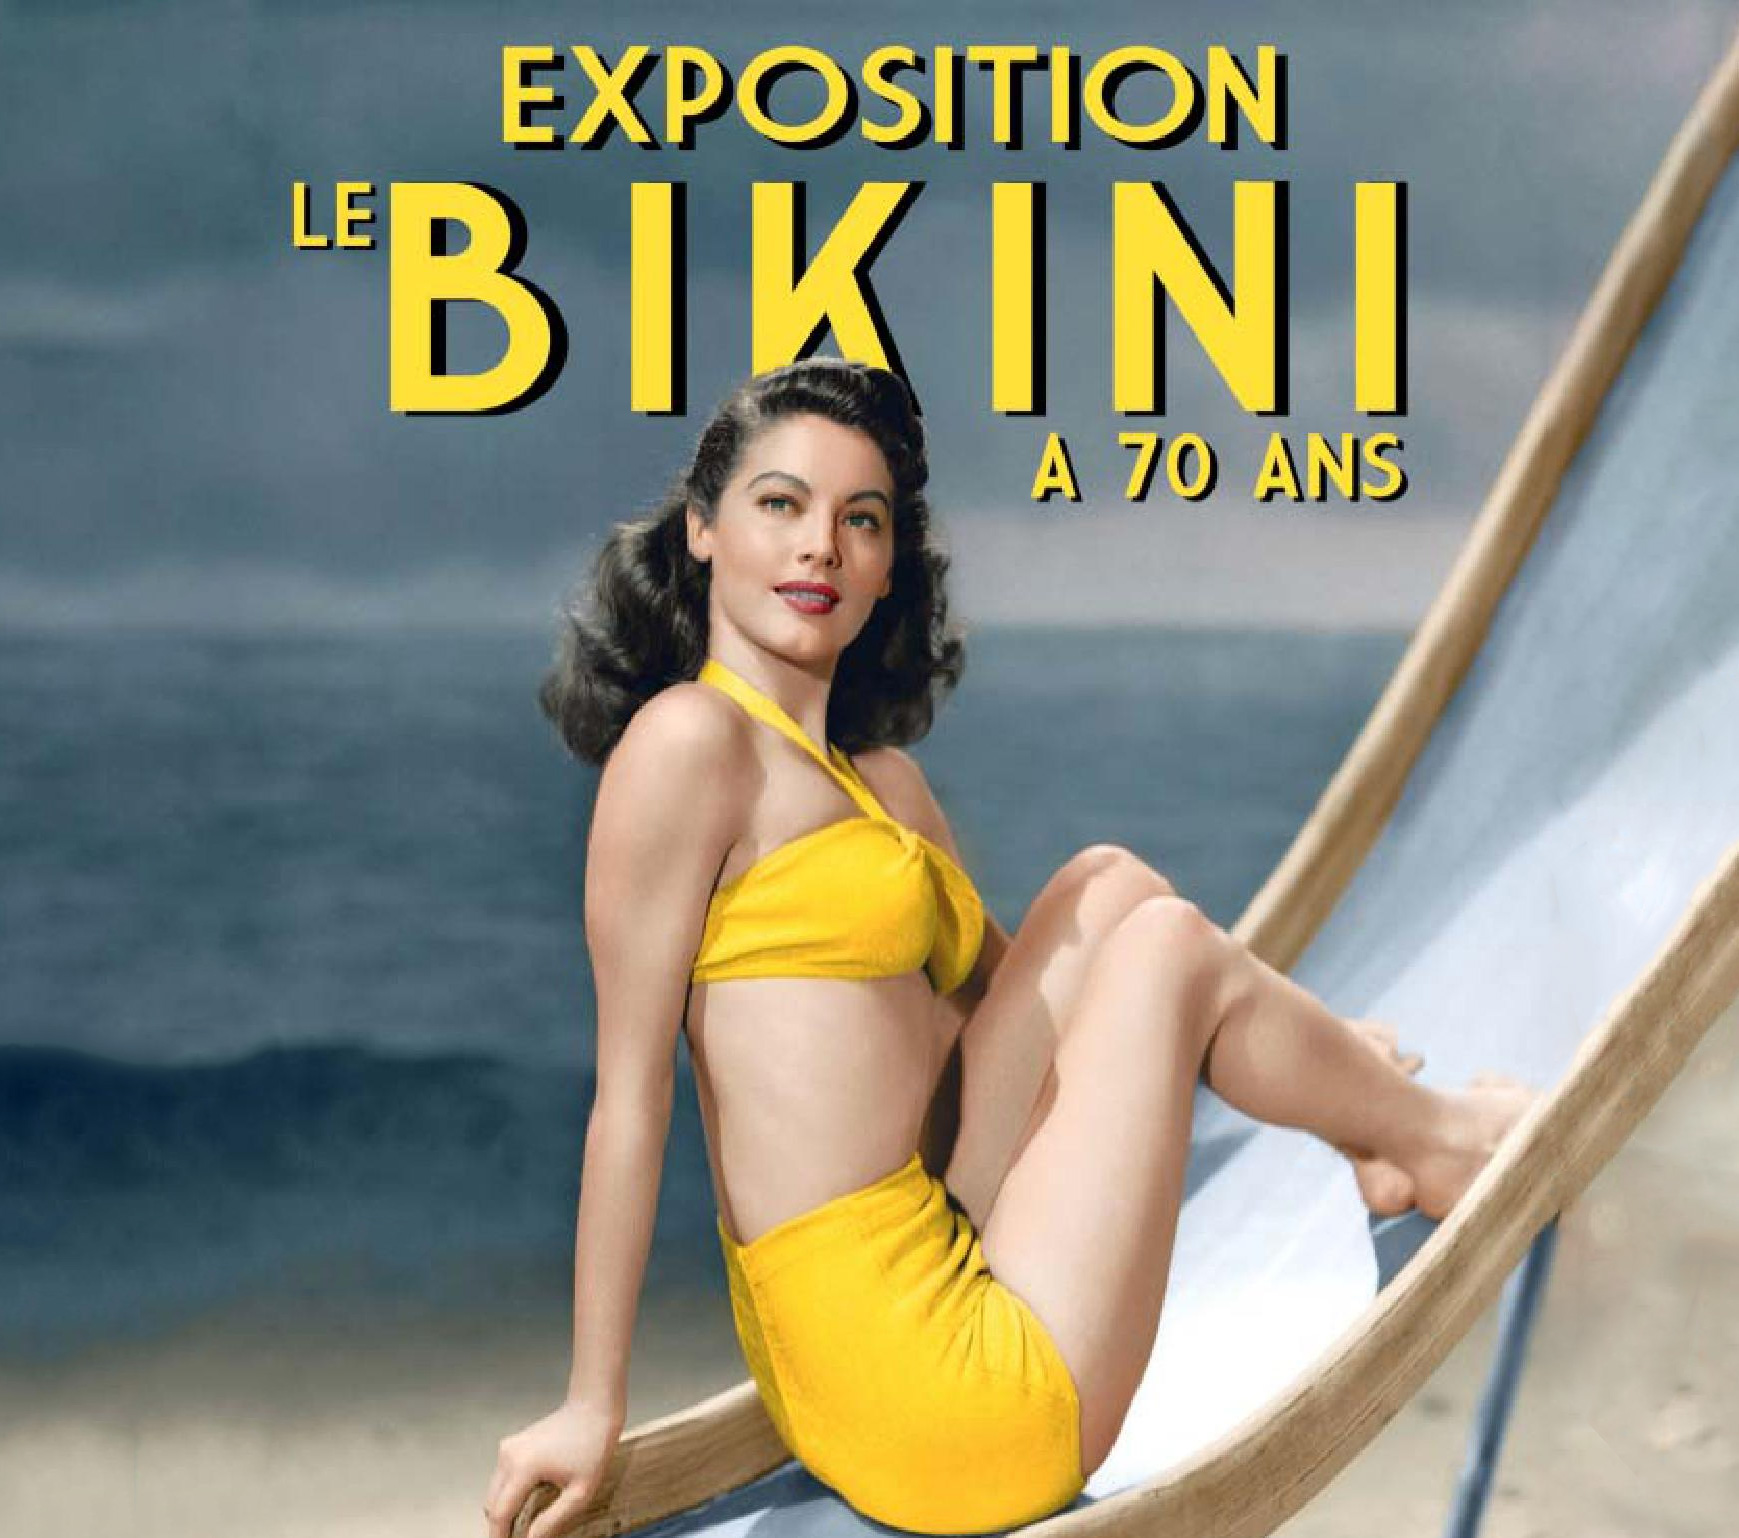 Le Bikini à la galerie Joseph Froissart, les 70 ans d’une icône glamour